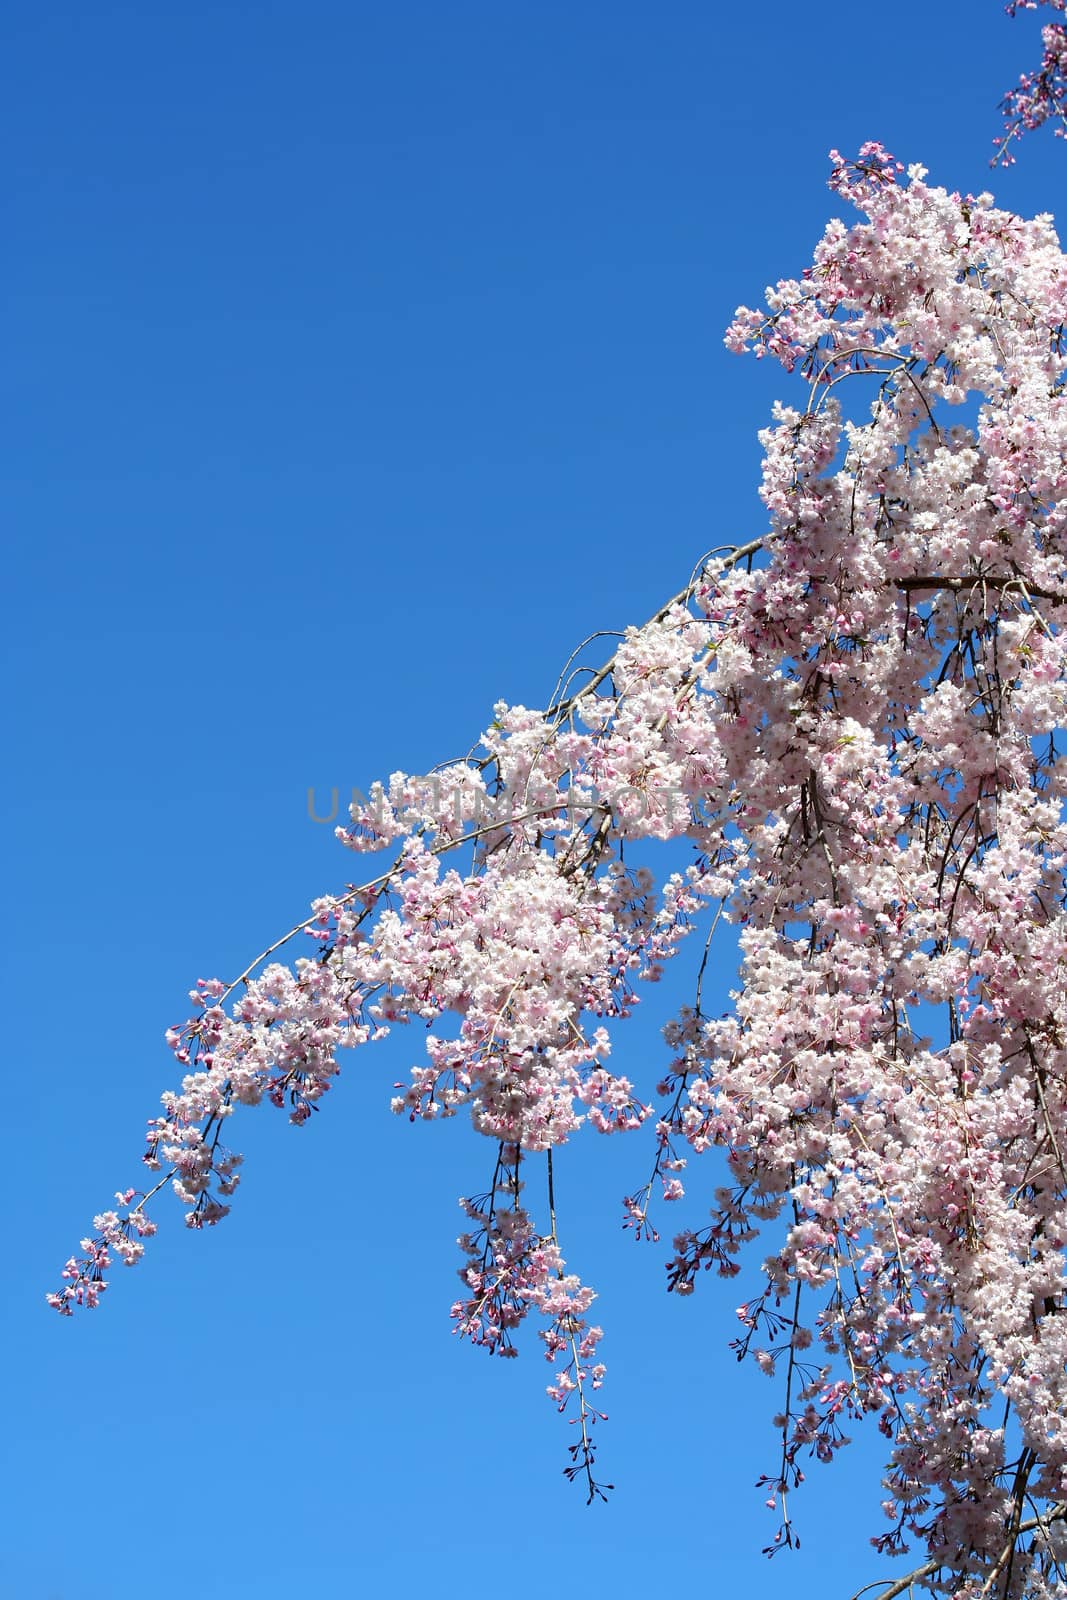 Cherry blossoms against blue sky by njnightsky